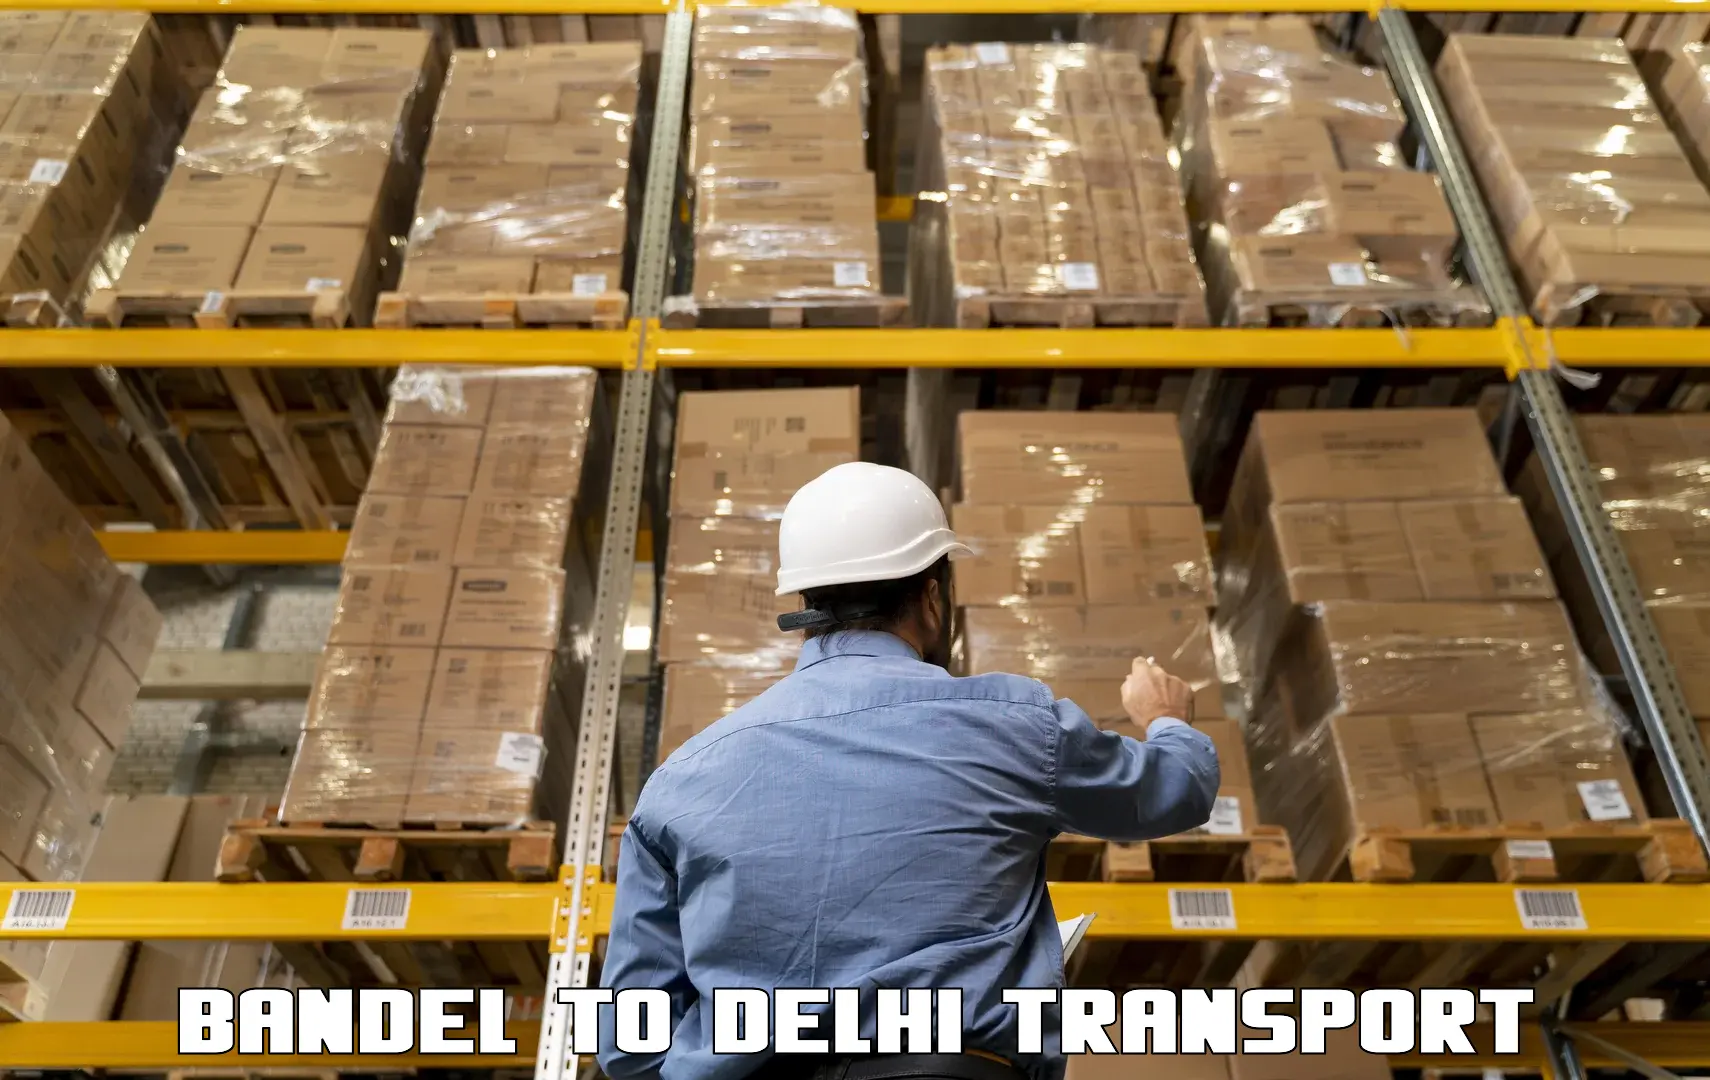 Online transport service Bandel to IIT Delhi